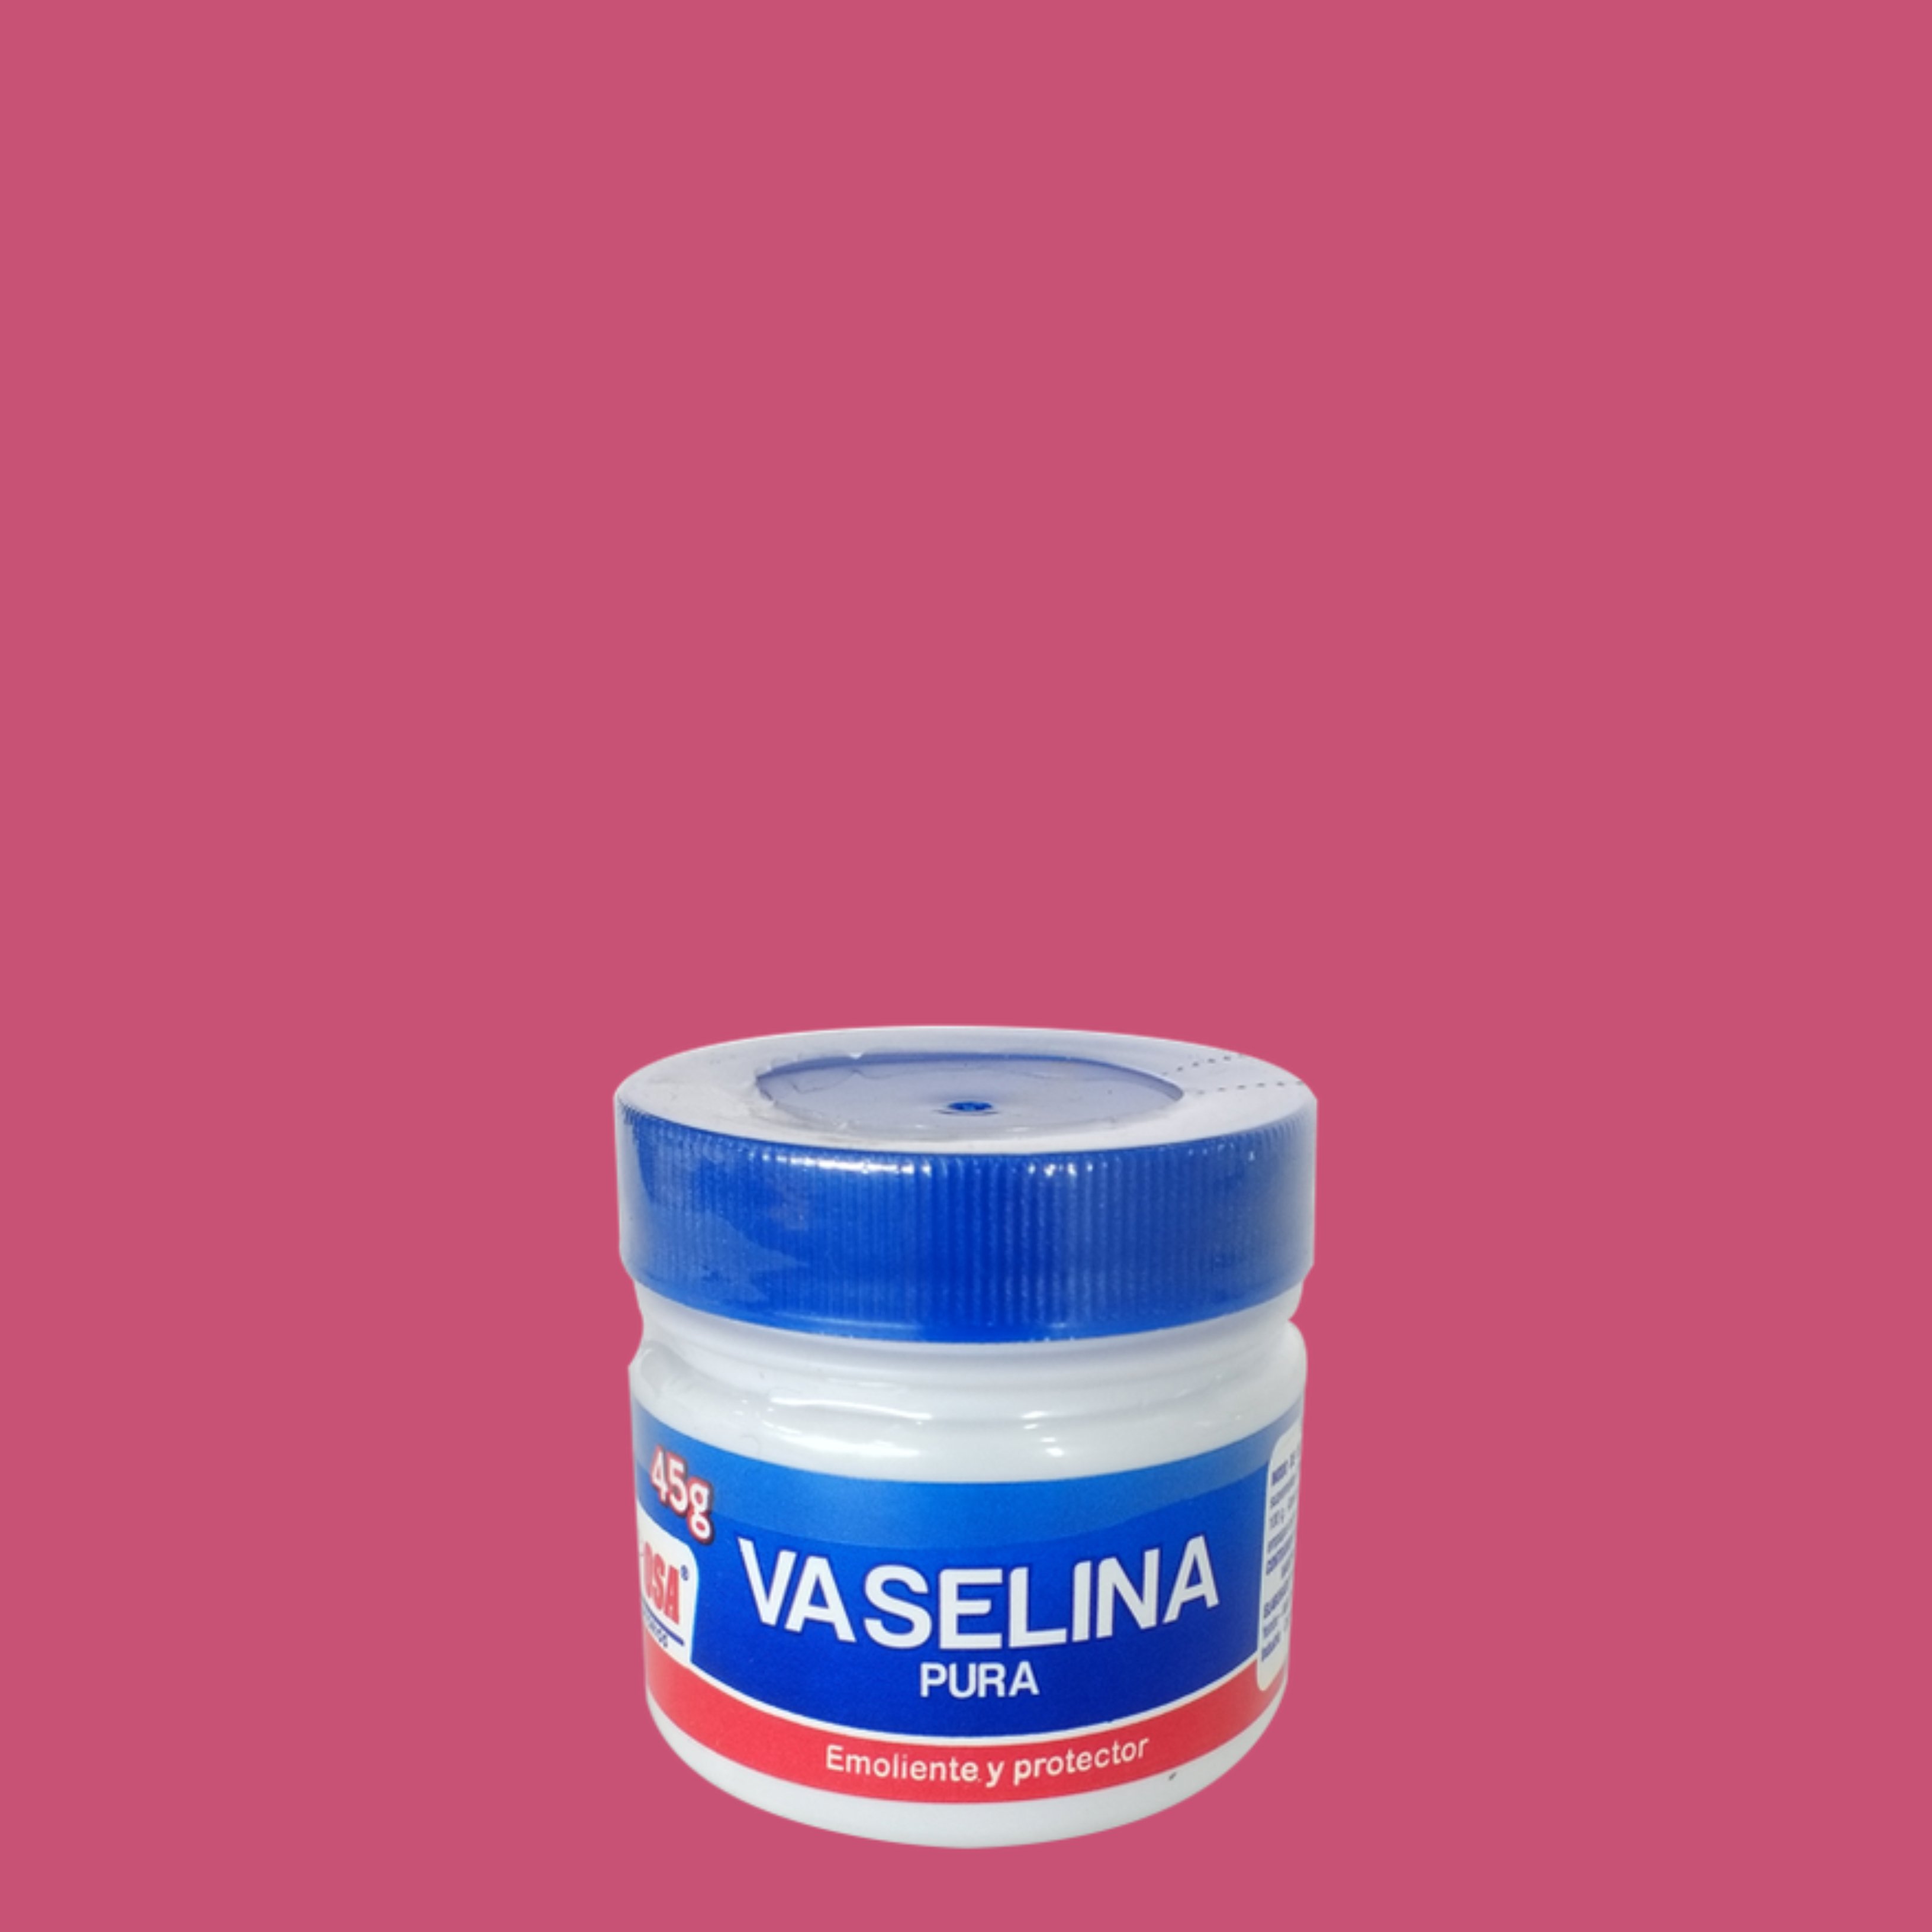 ¿Es adecuado utilizar la vaselina como lubricante en las relaciones sexuales?